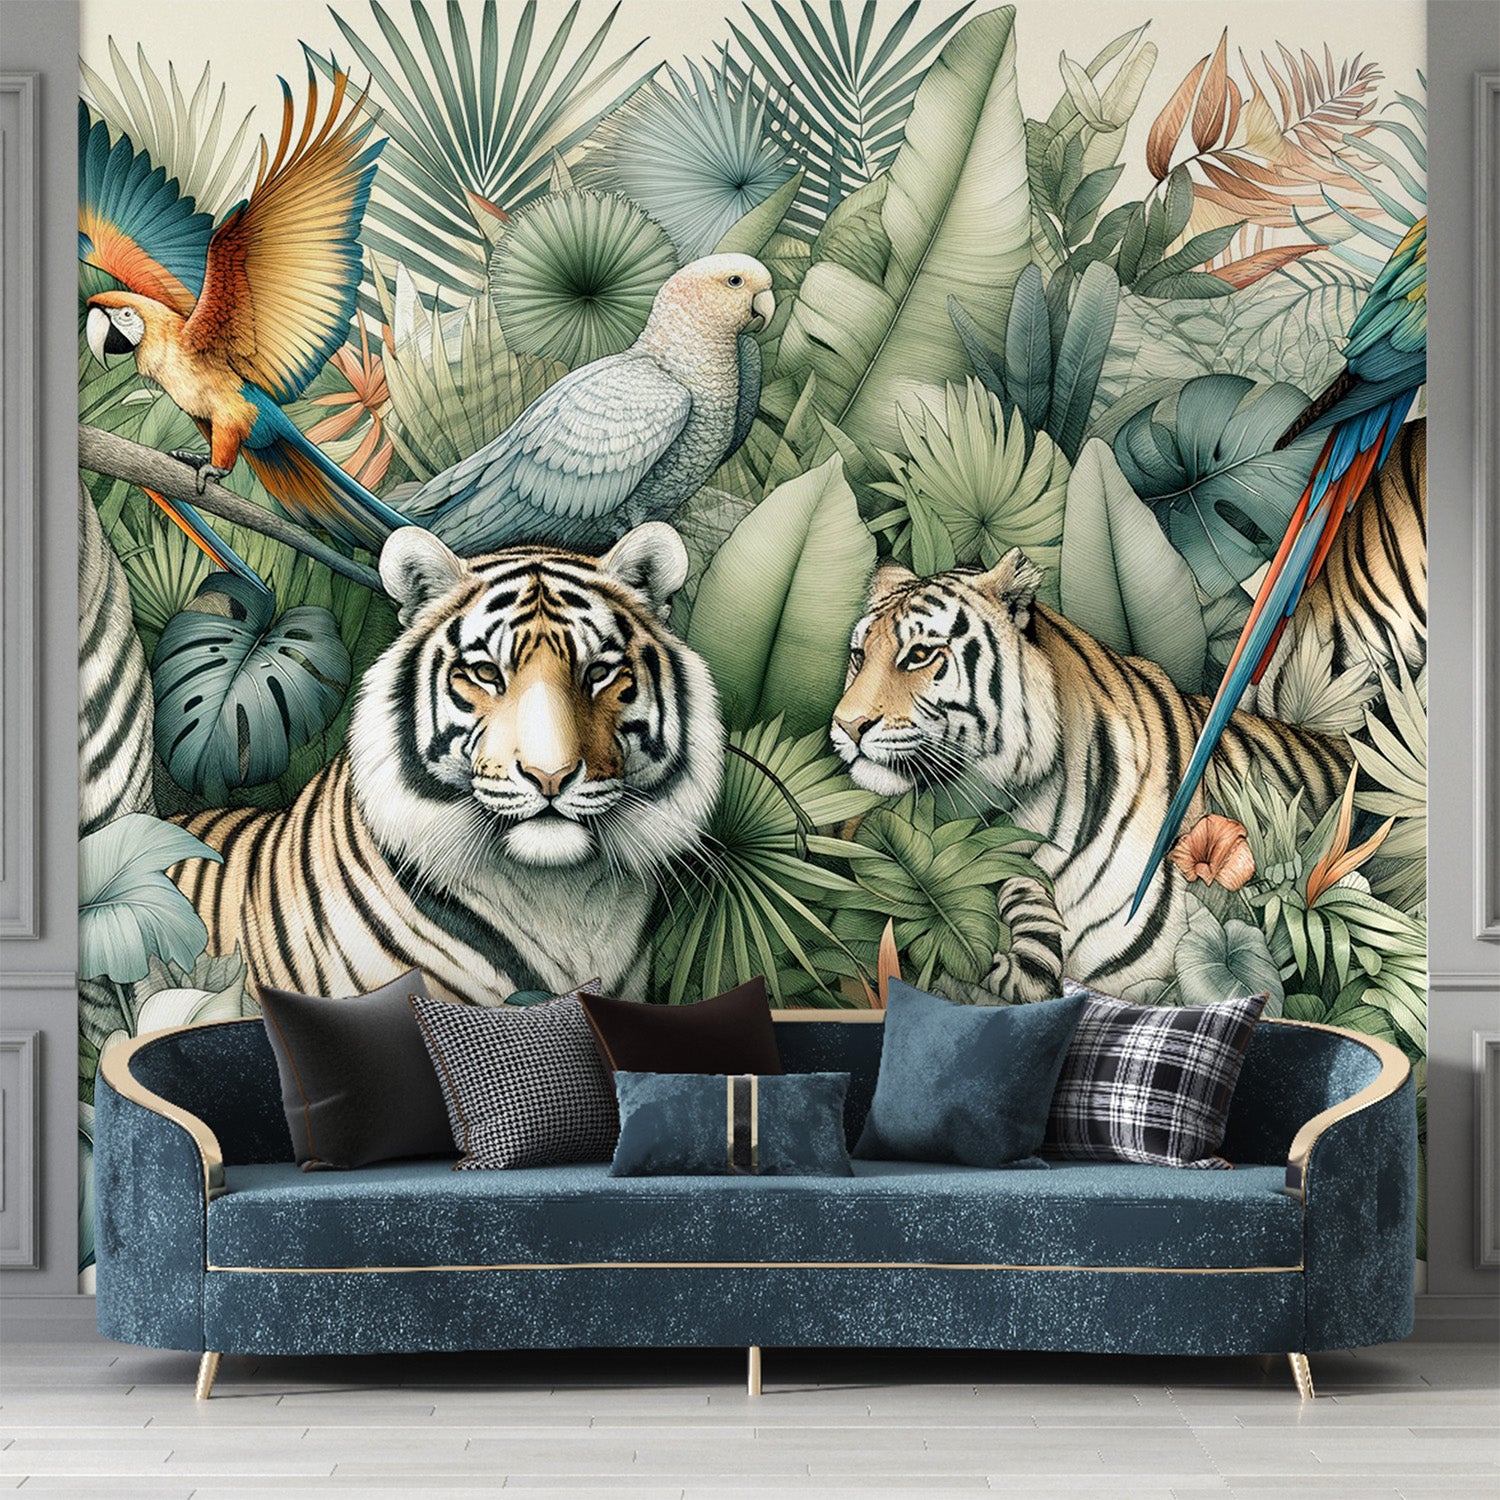  Papier peint jungle Tigres et perroquets parmi la végétation tropicale